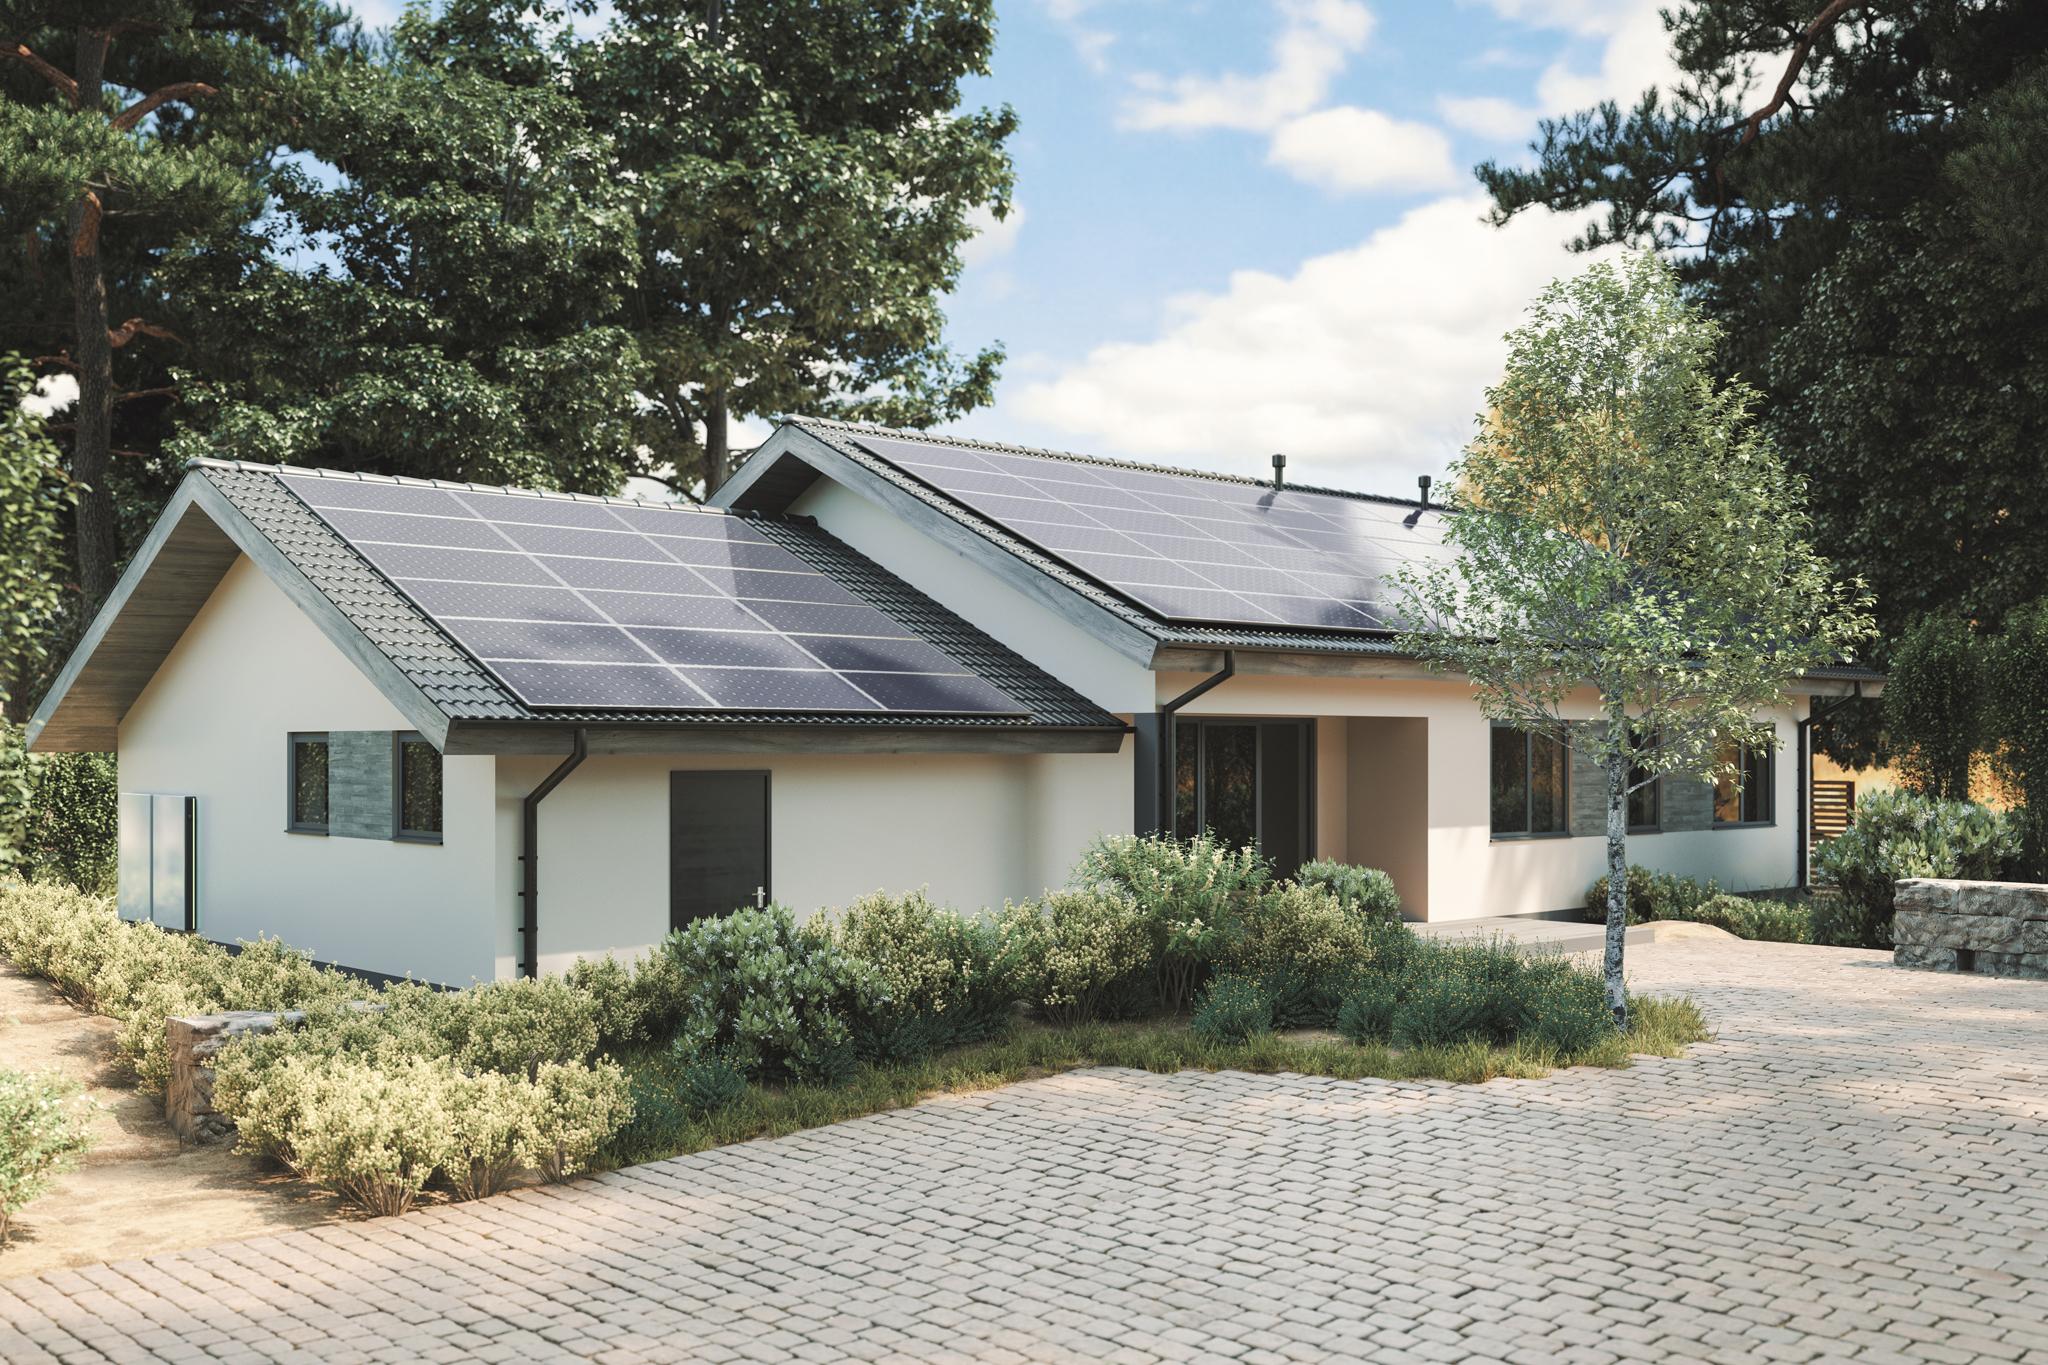 Haus mit PV-Anlage - umweltfreundliche Altersvorsorge mit zolar